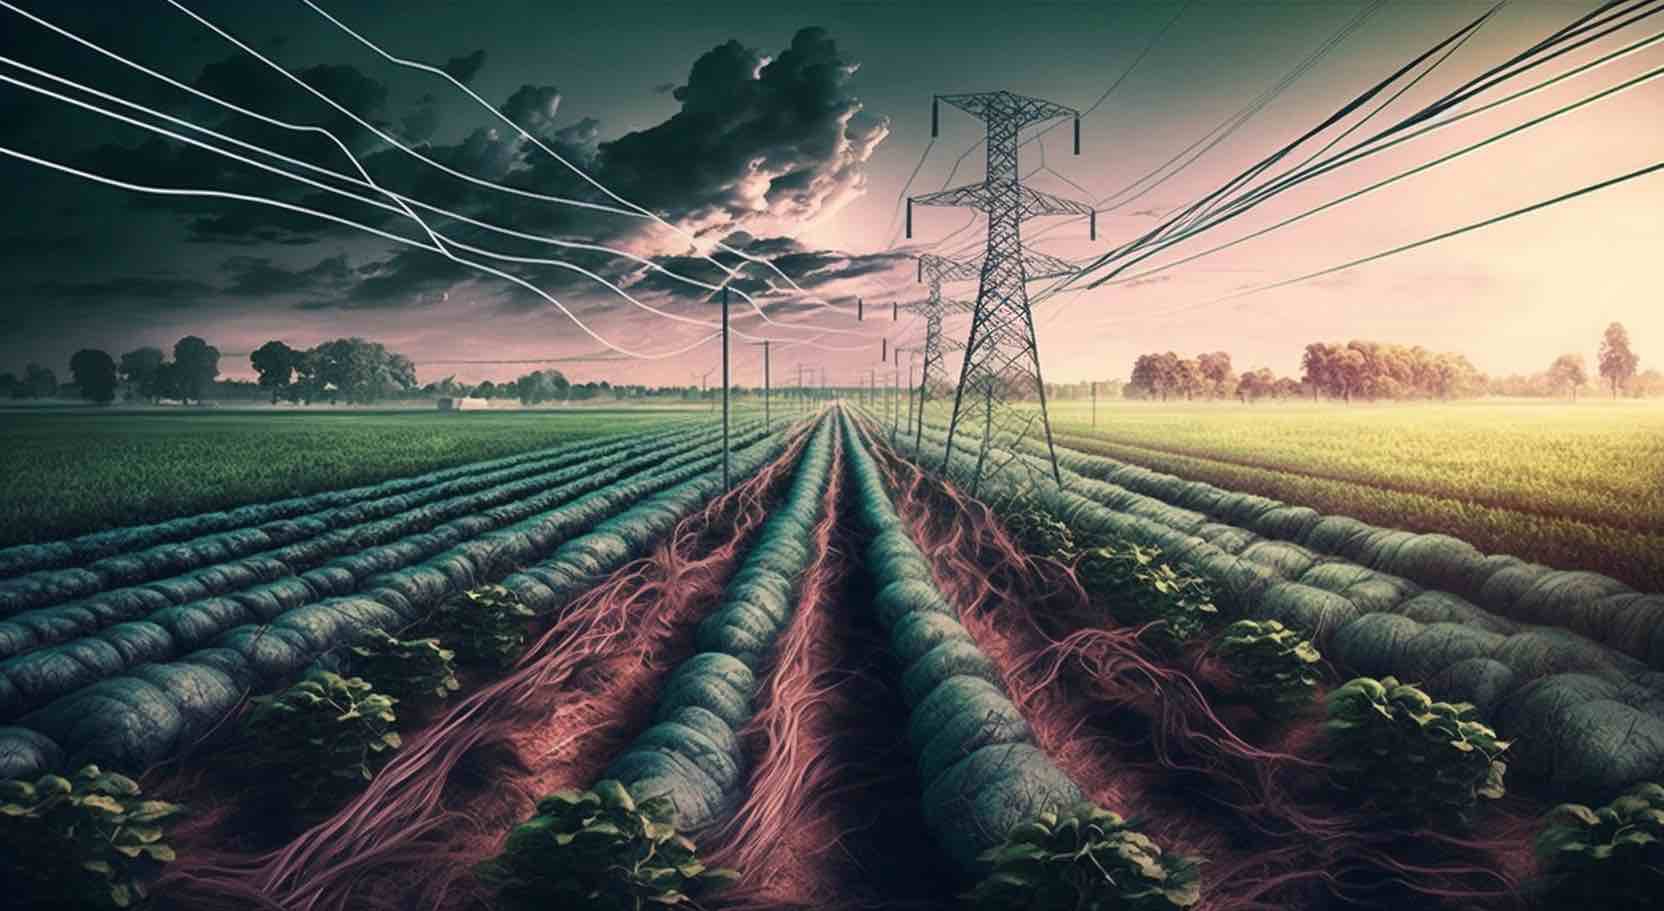 کشاورزی الکترو فرهنگ: روشی انقلابی برای افزایش بازده و پایداری؟